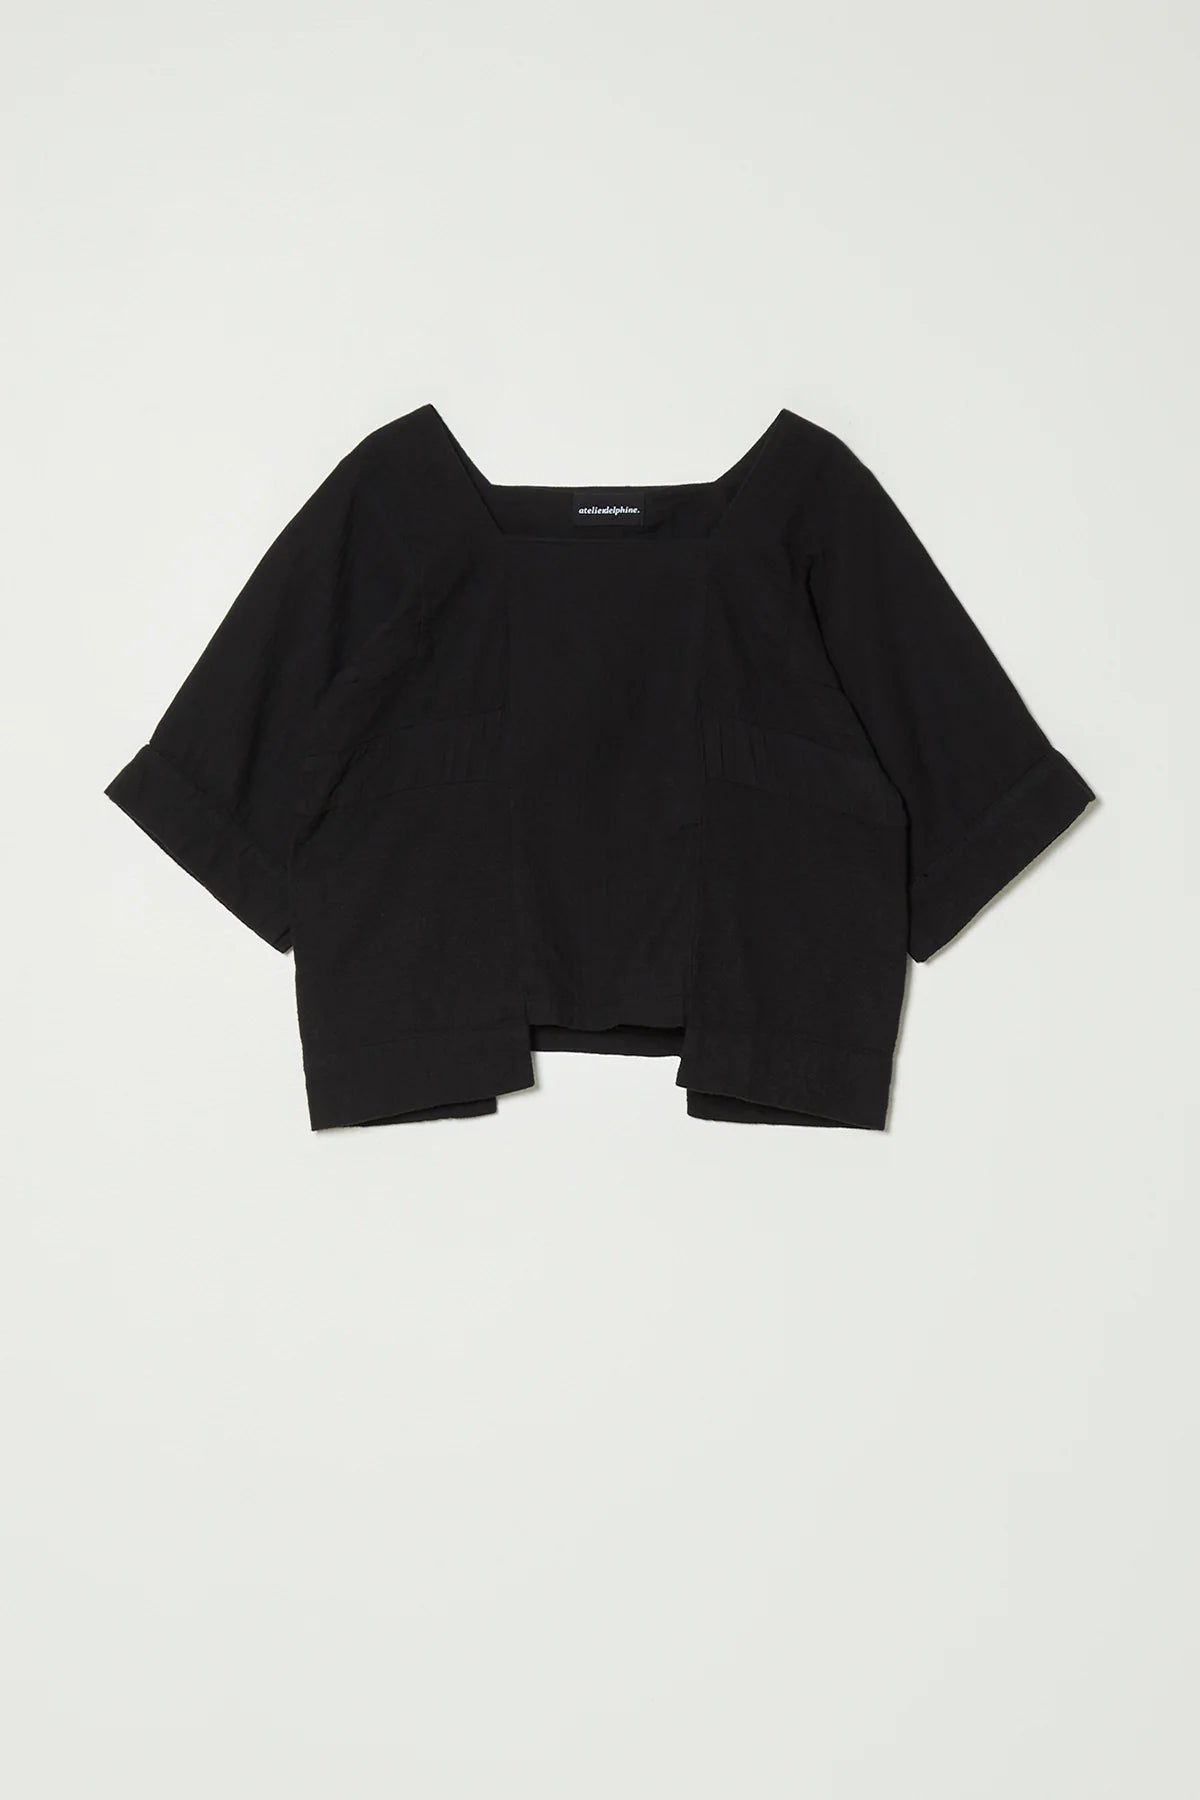 Atelier Delphine Block Top Shirt in black